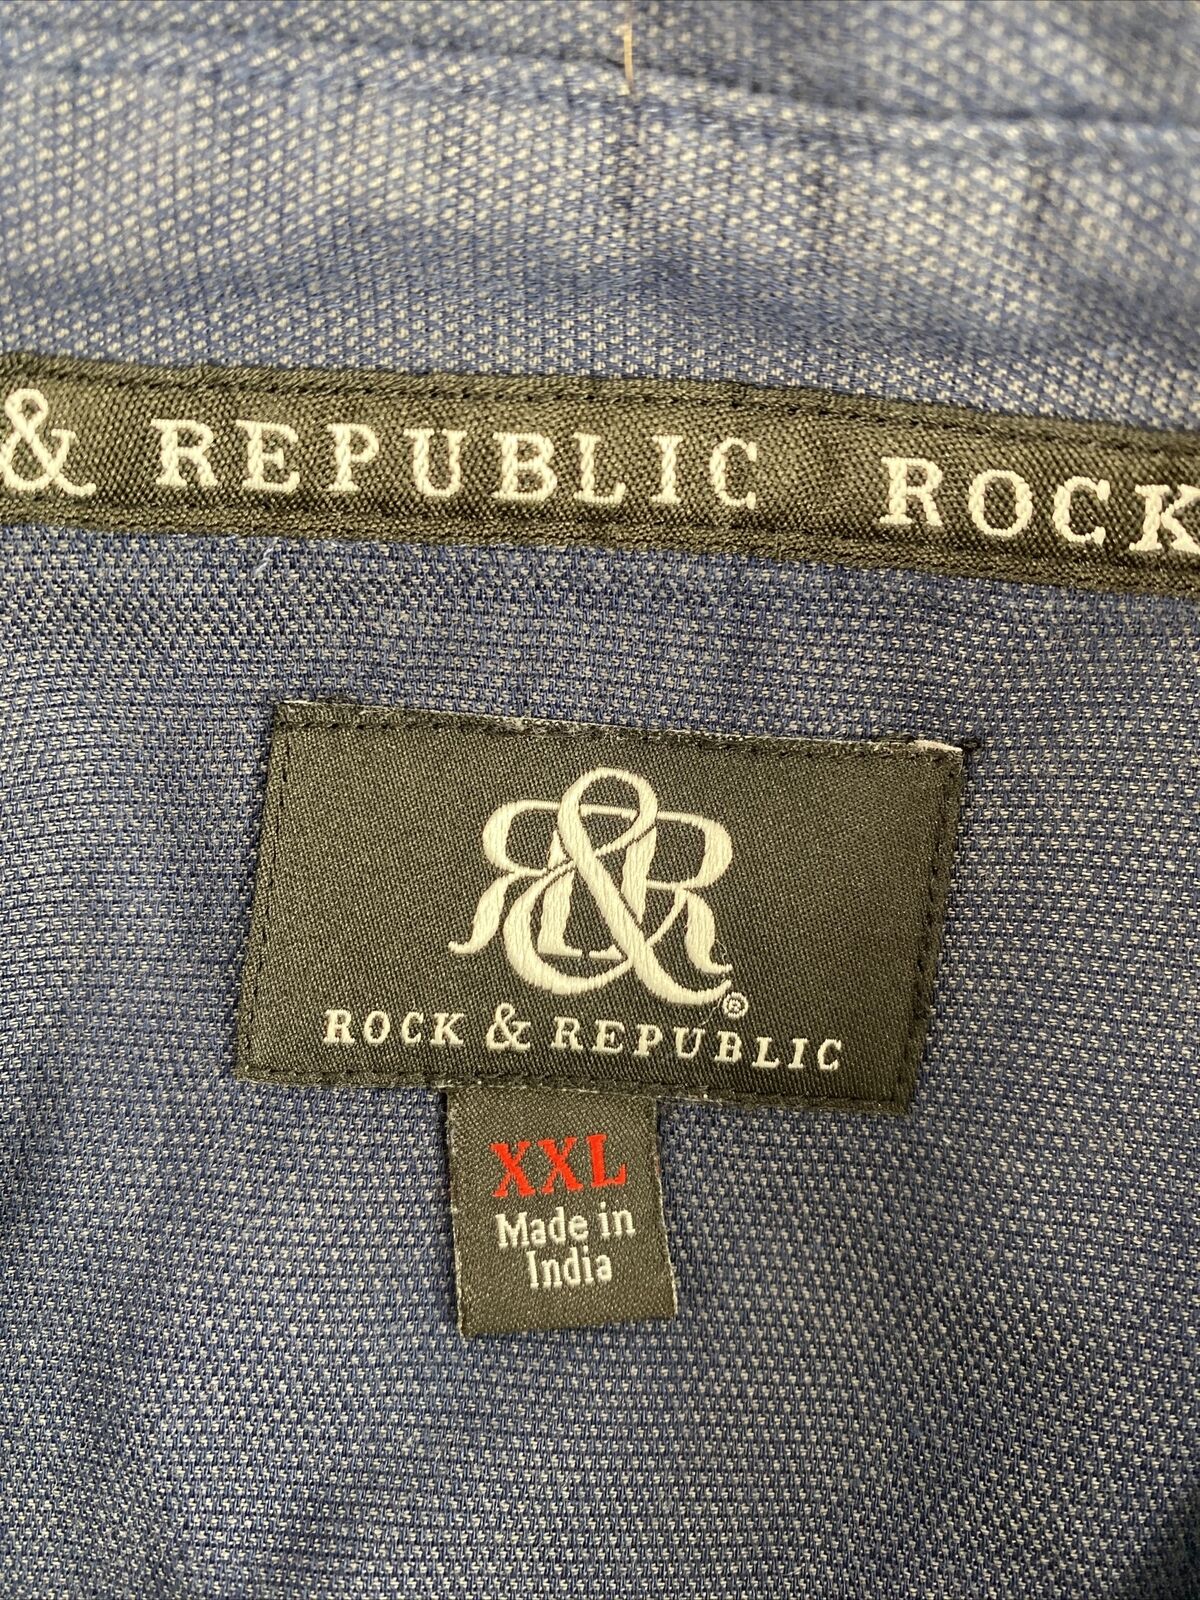 Rock & Republic Men's Navy Blue Long Sleeve Casual Button Up Shirt - XXL